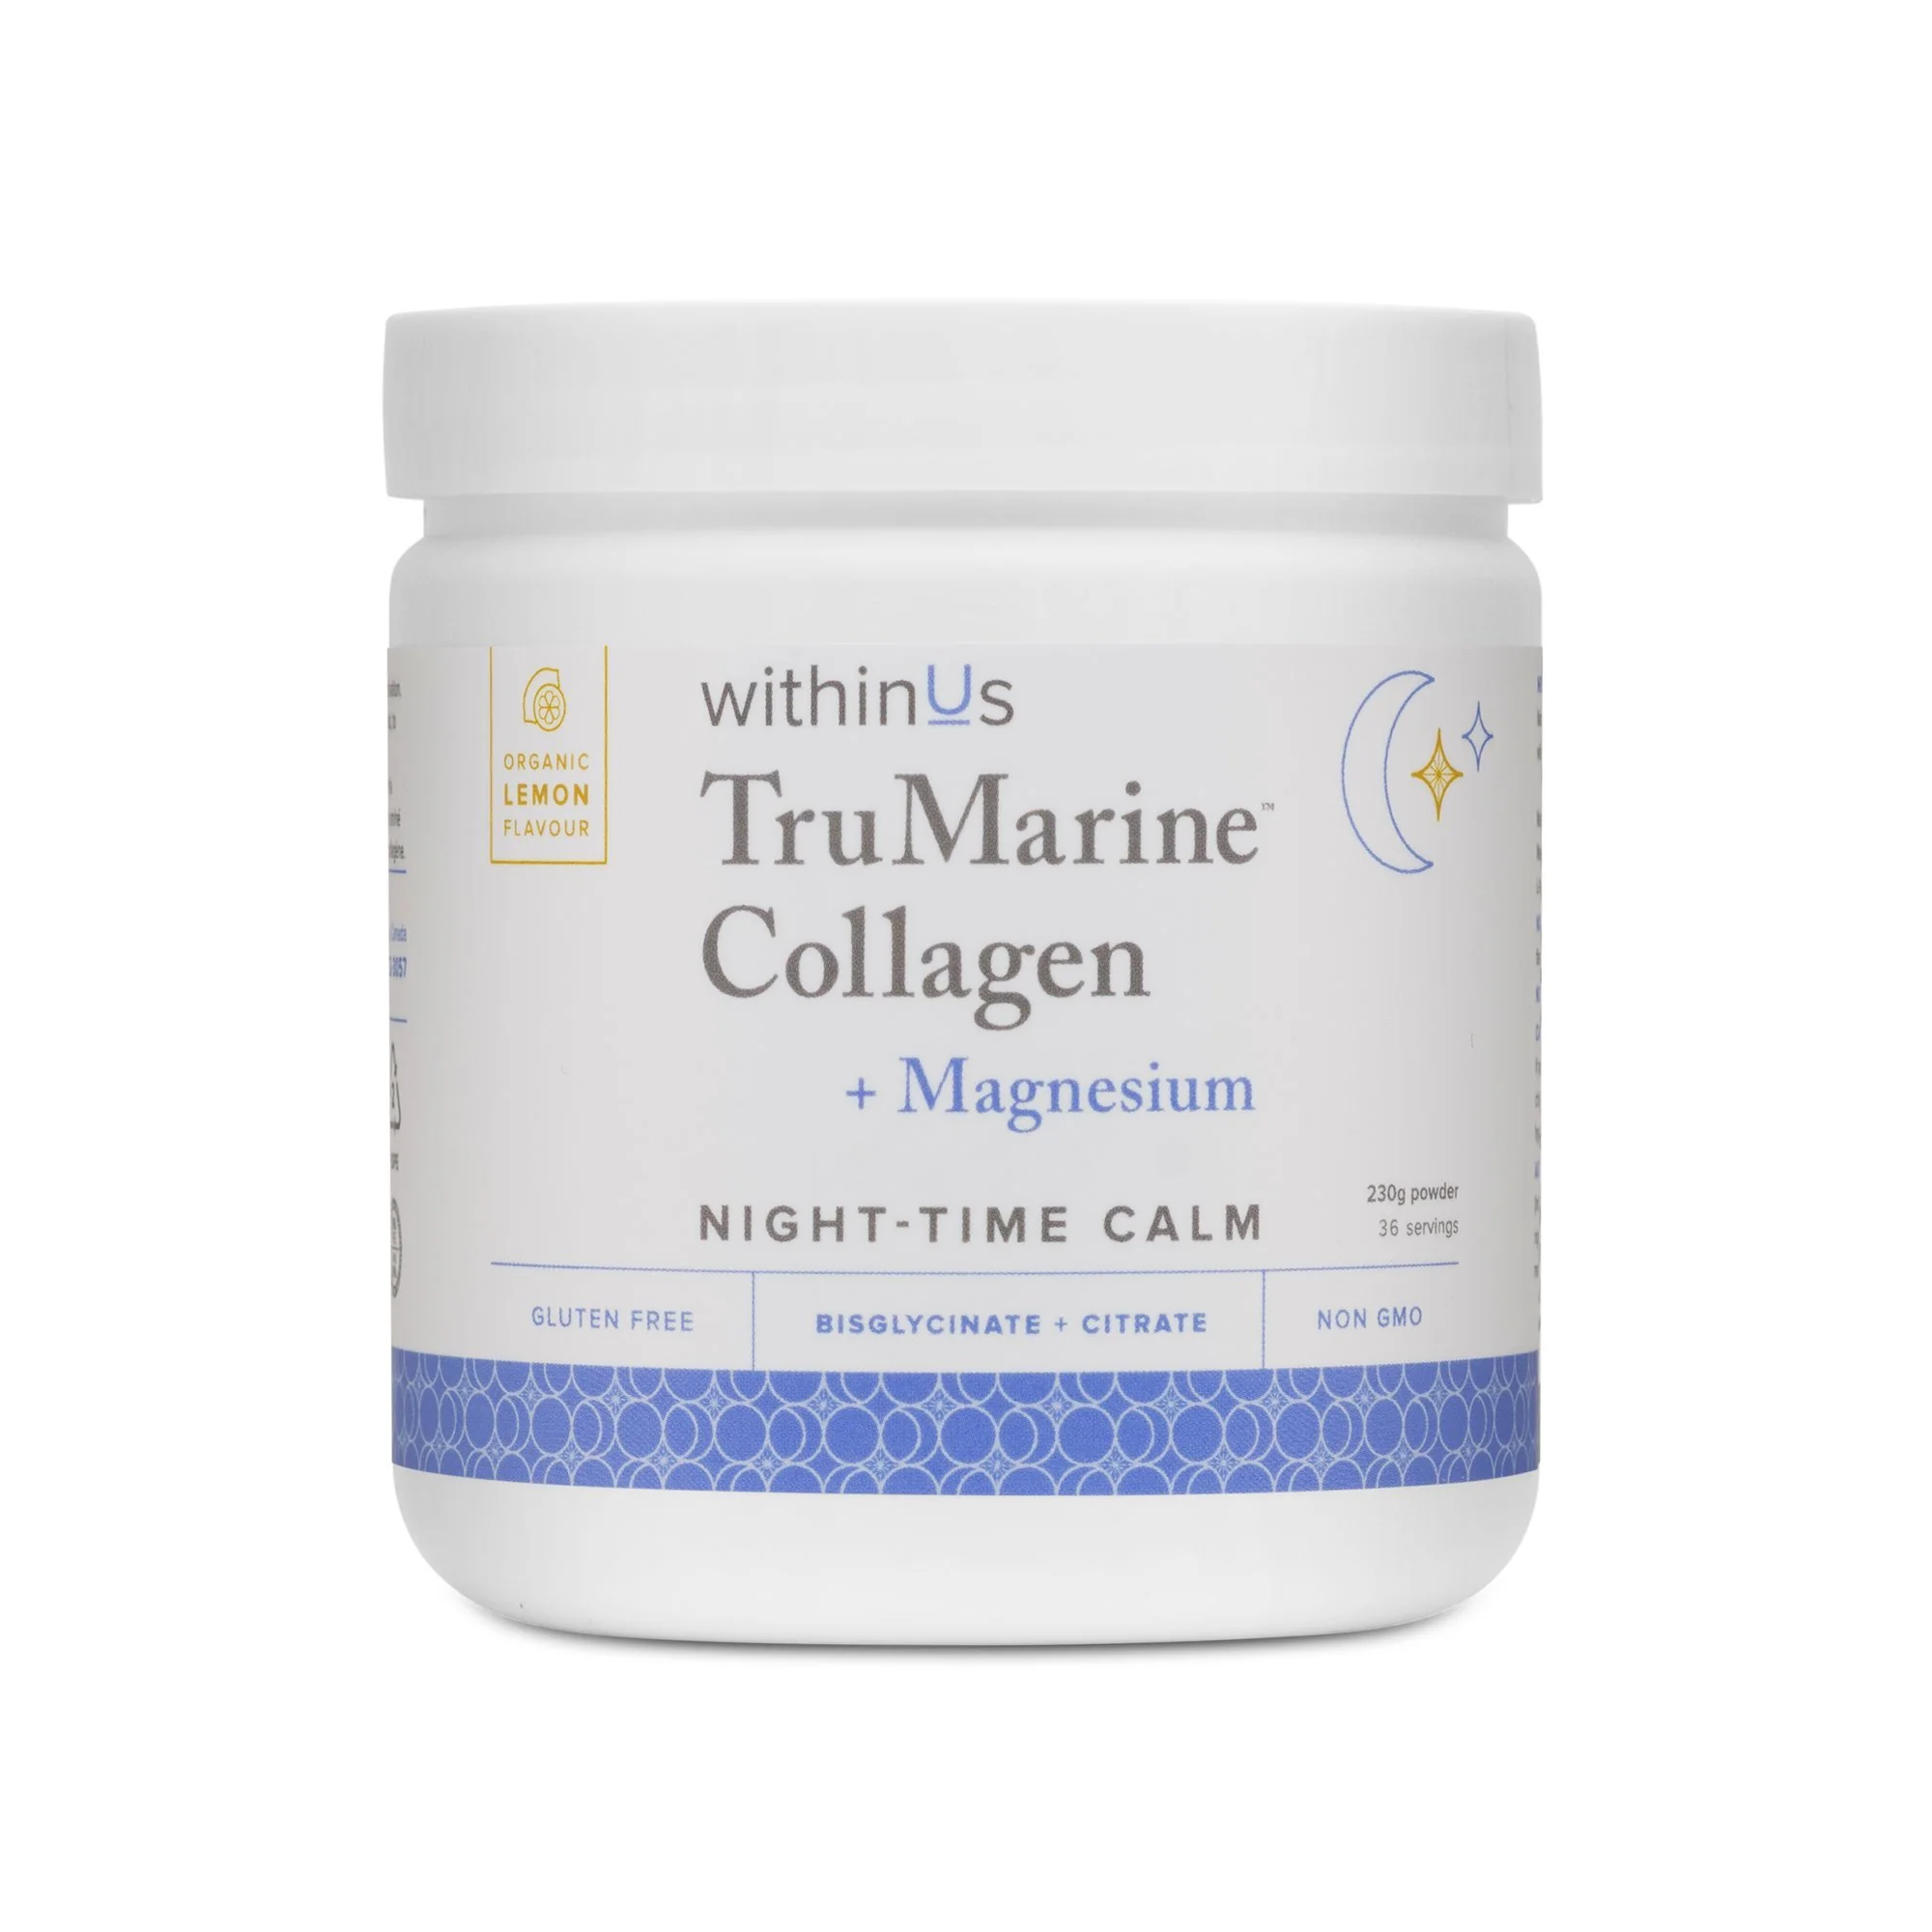 withinus-trumarine-collagen-magnesium-243952_1024x1024@2x